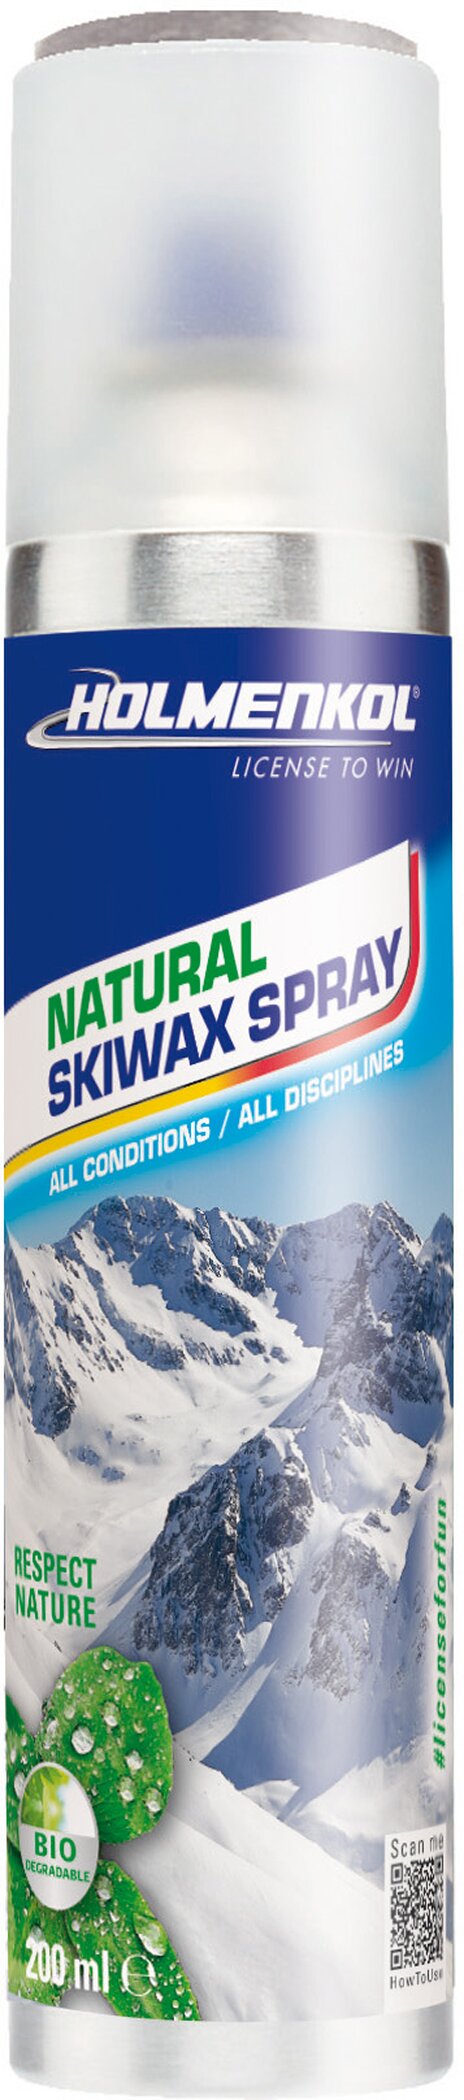 Natural Skiwax Spray 200 ml 